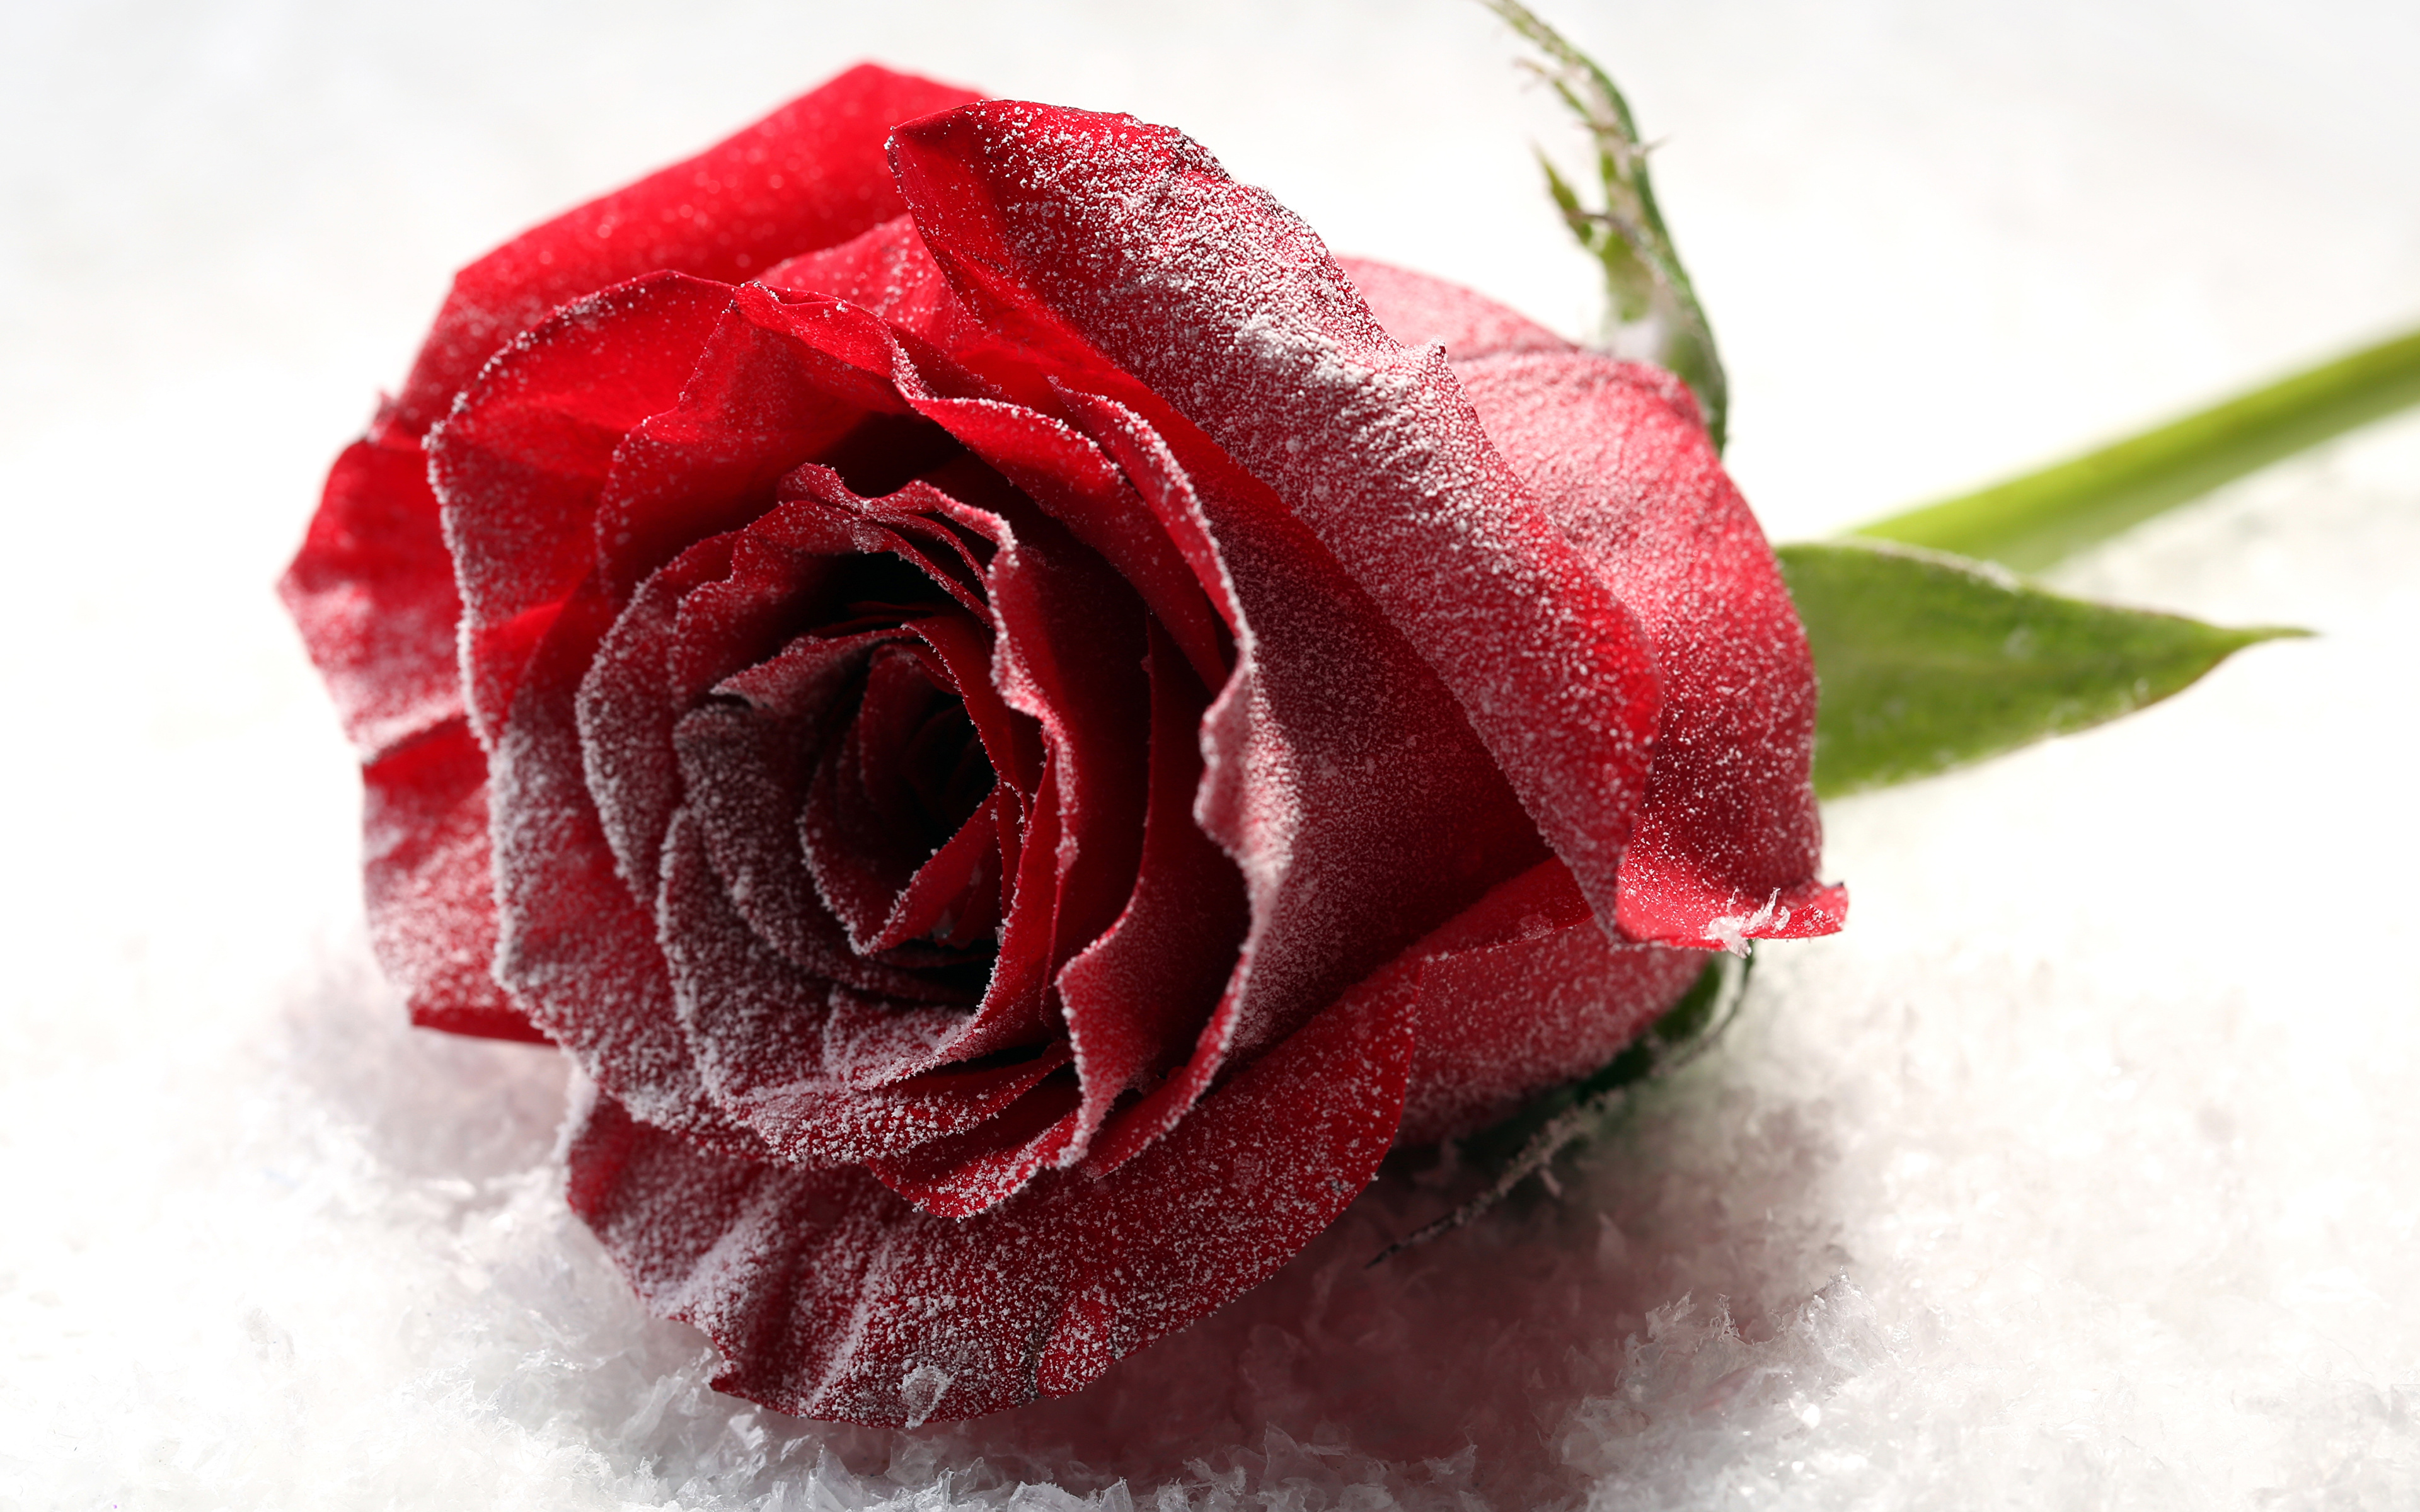 Бордовые розы на снегу